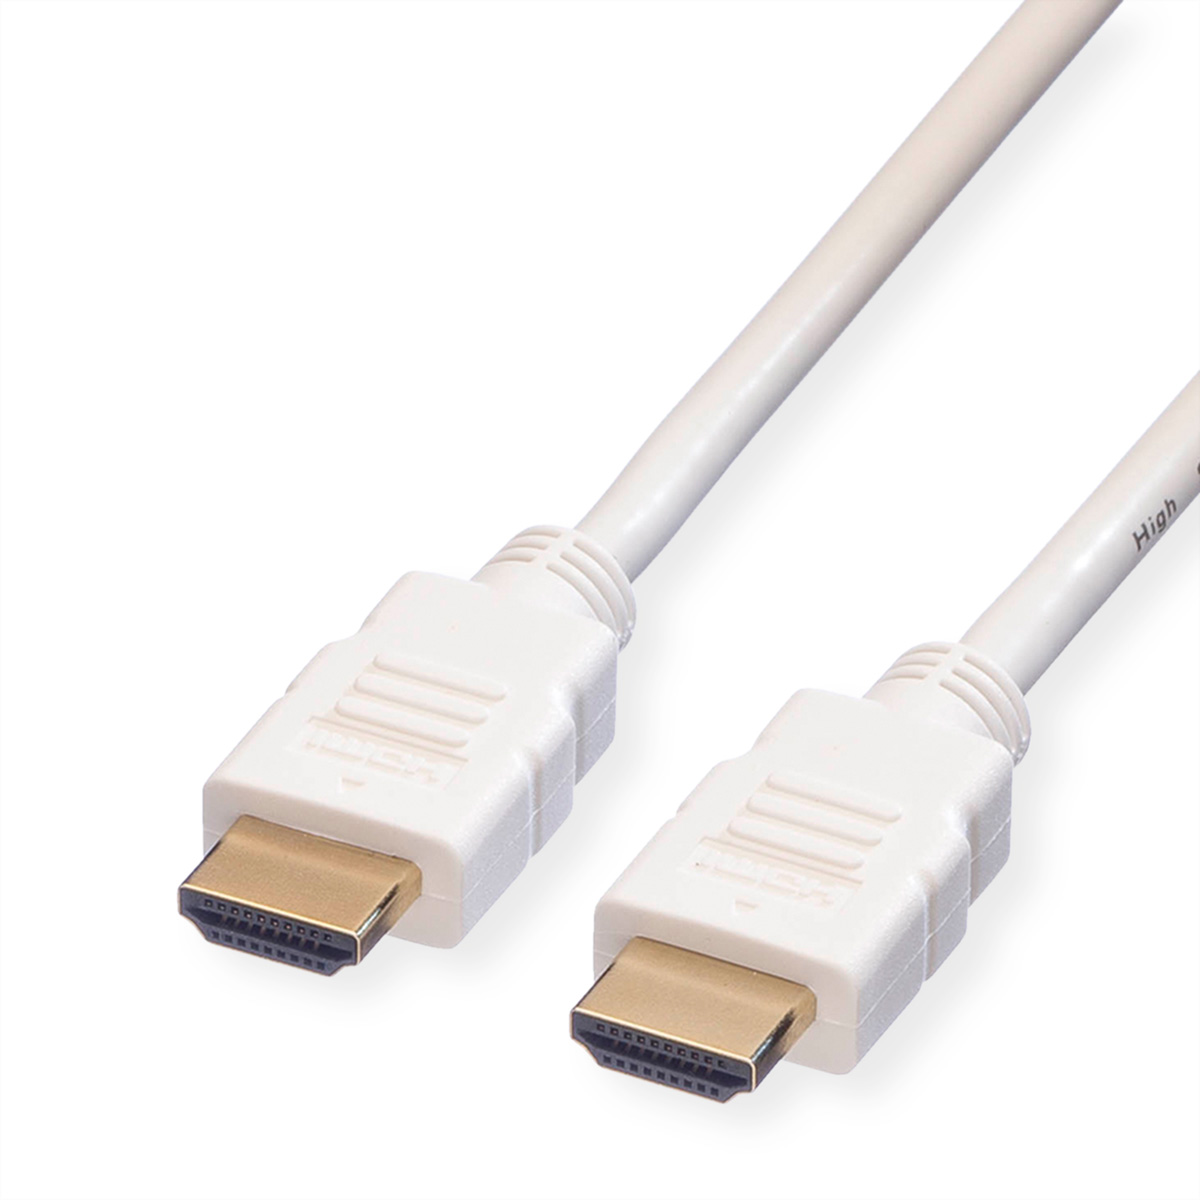 ROLINE HDMI High Speed Kabel mit Ethernet, weiß, 2 m